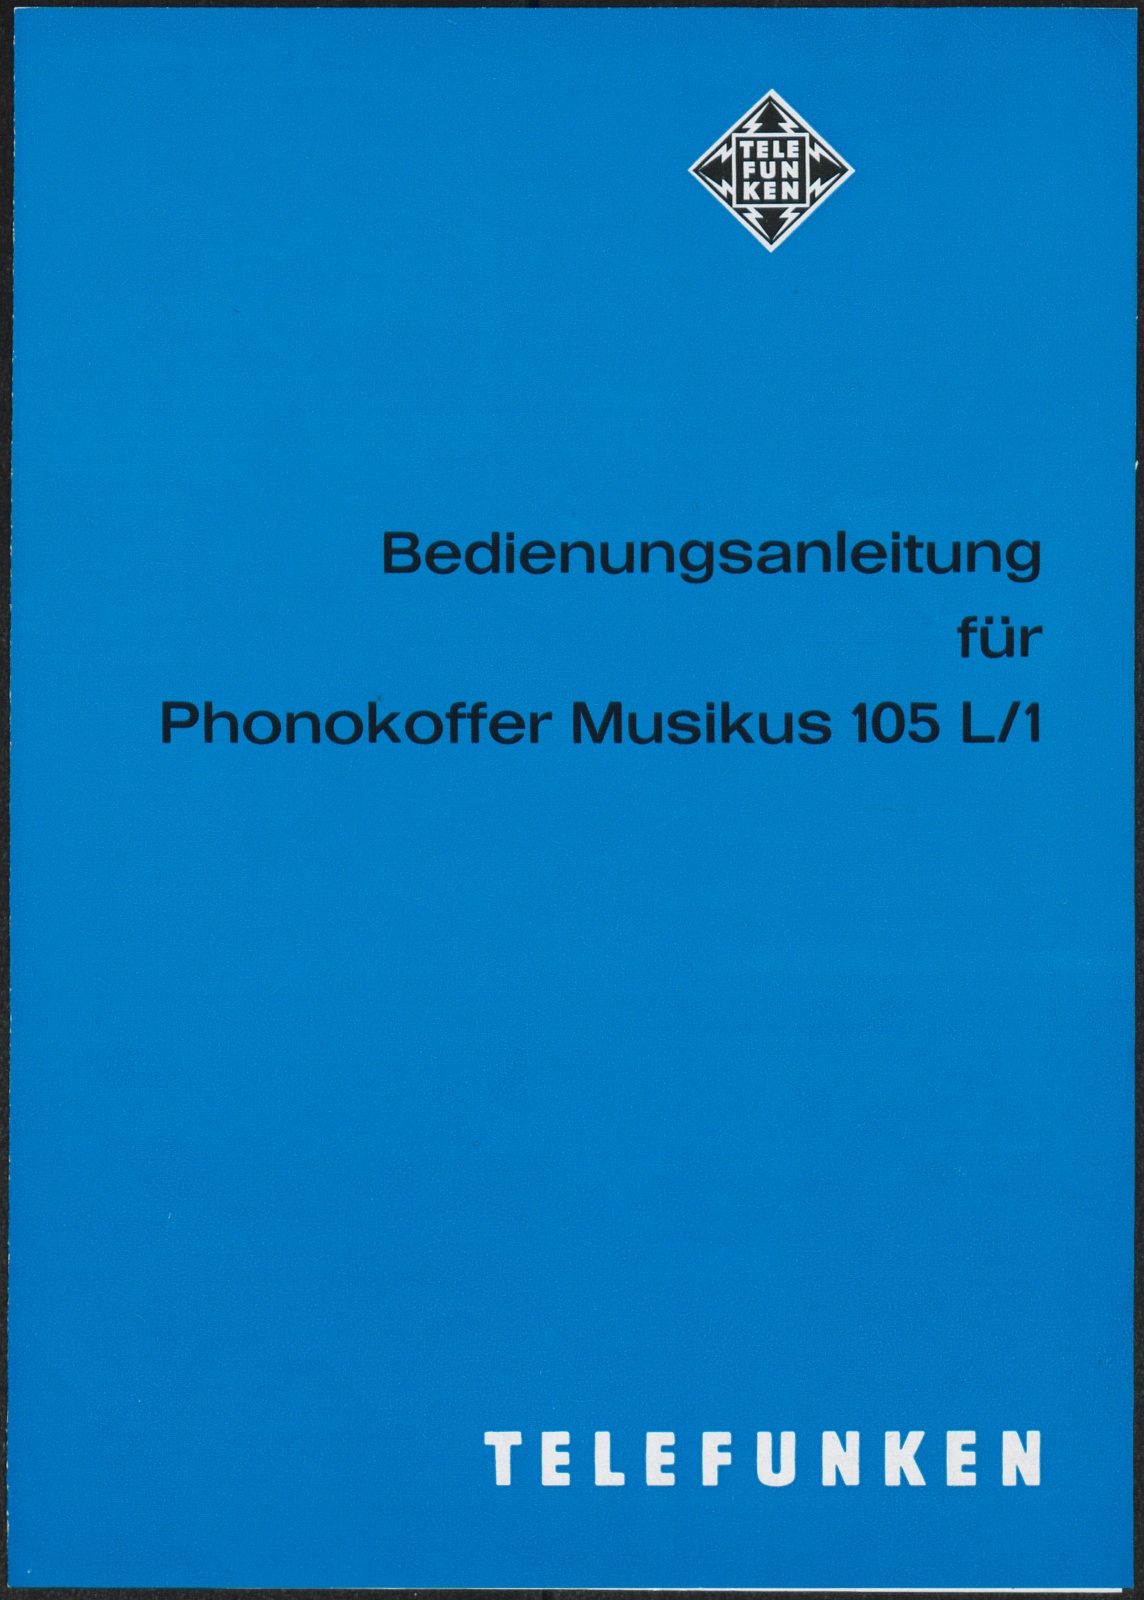 Bedienungsanleitung: Bedienungsanleitung für Telefunken Phonokoffer Musikus 105 L/1 (Stiftung Deutsches Technikmuseum Berlin CC0)